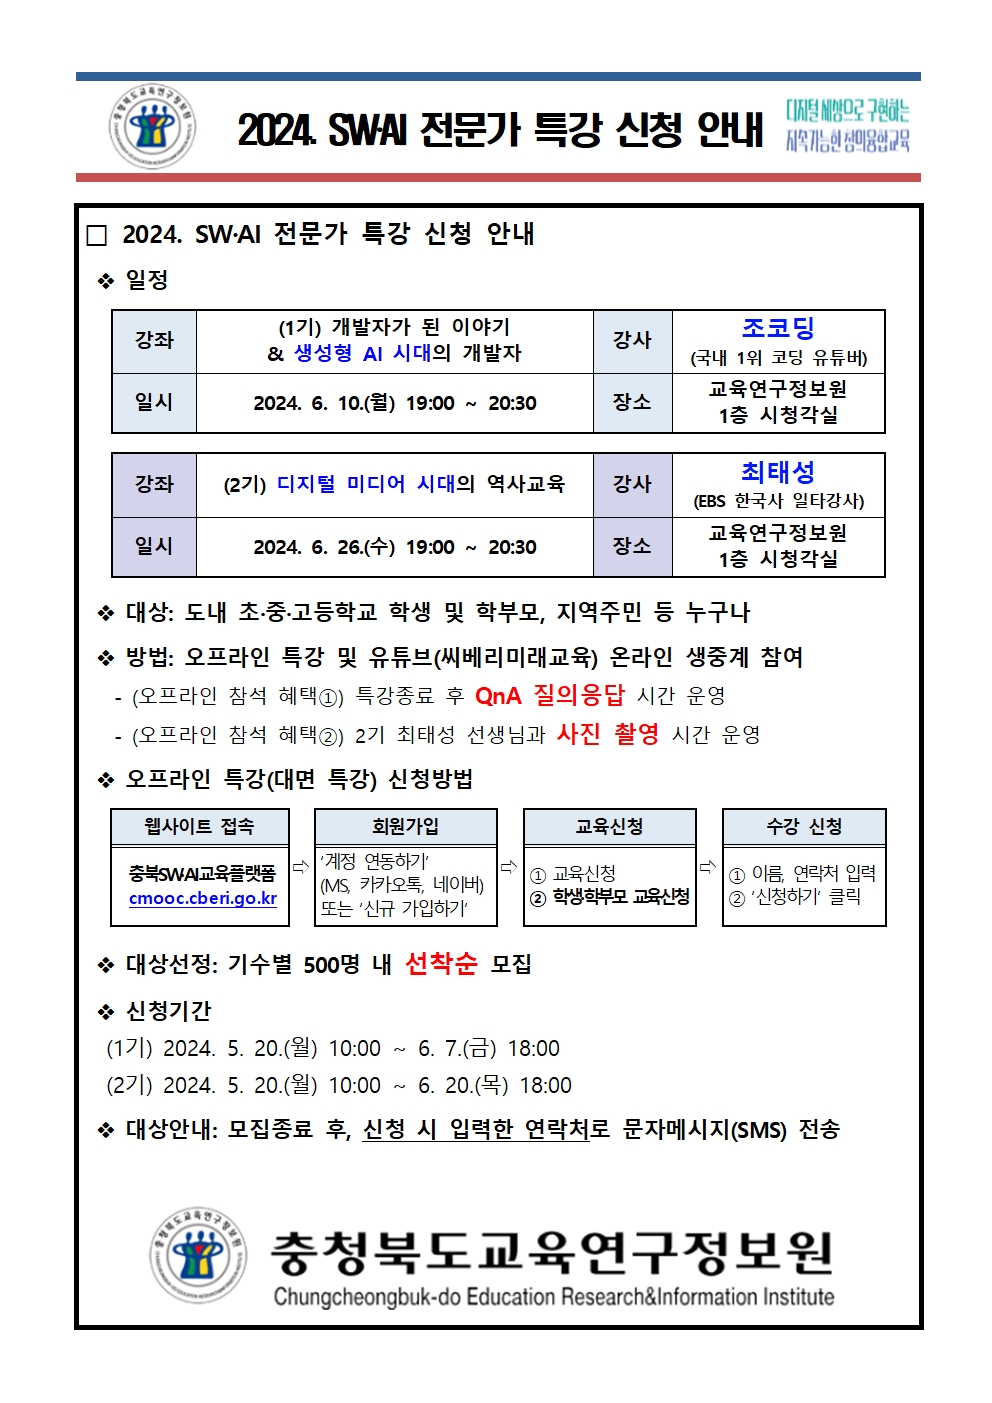 충청북도교육연구정보원 정보교육부_[붙임1] 가정통신문001